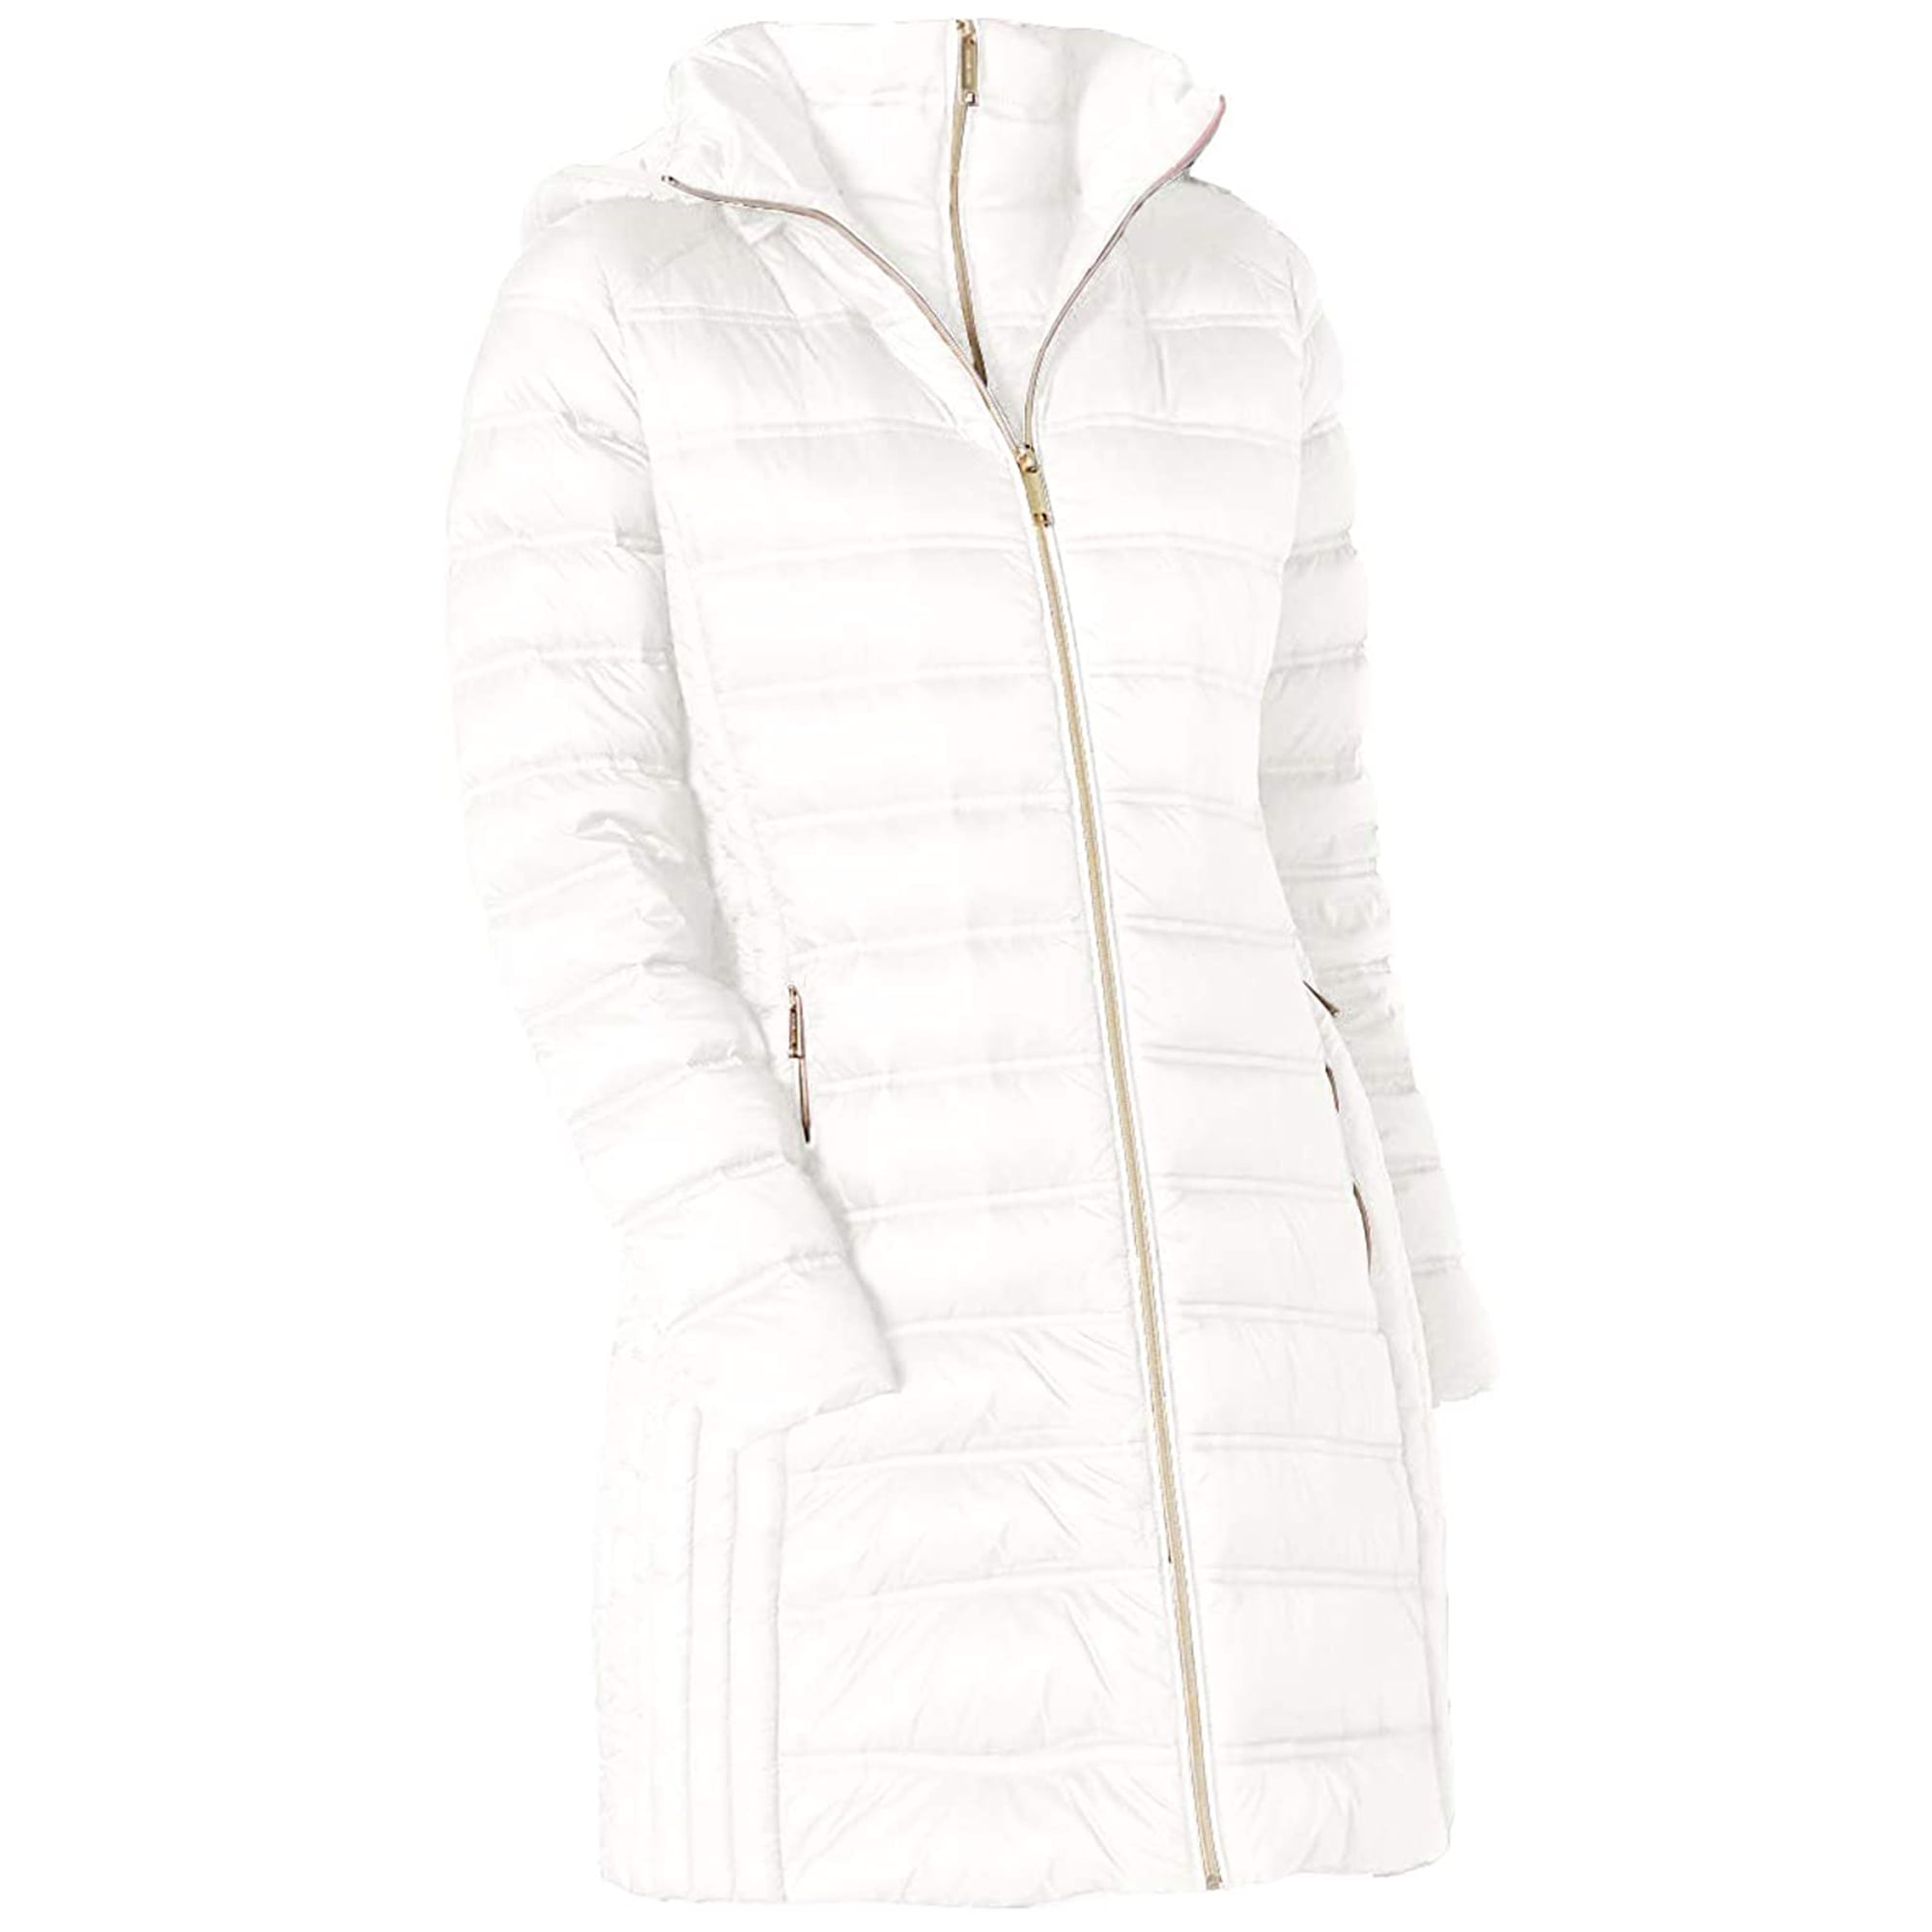 michael kors women's white coat